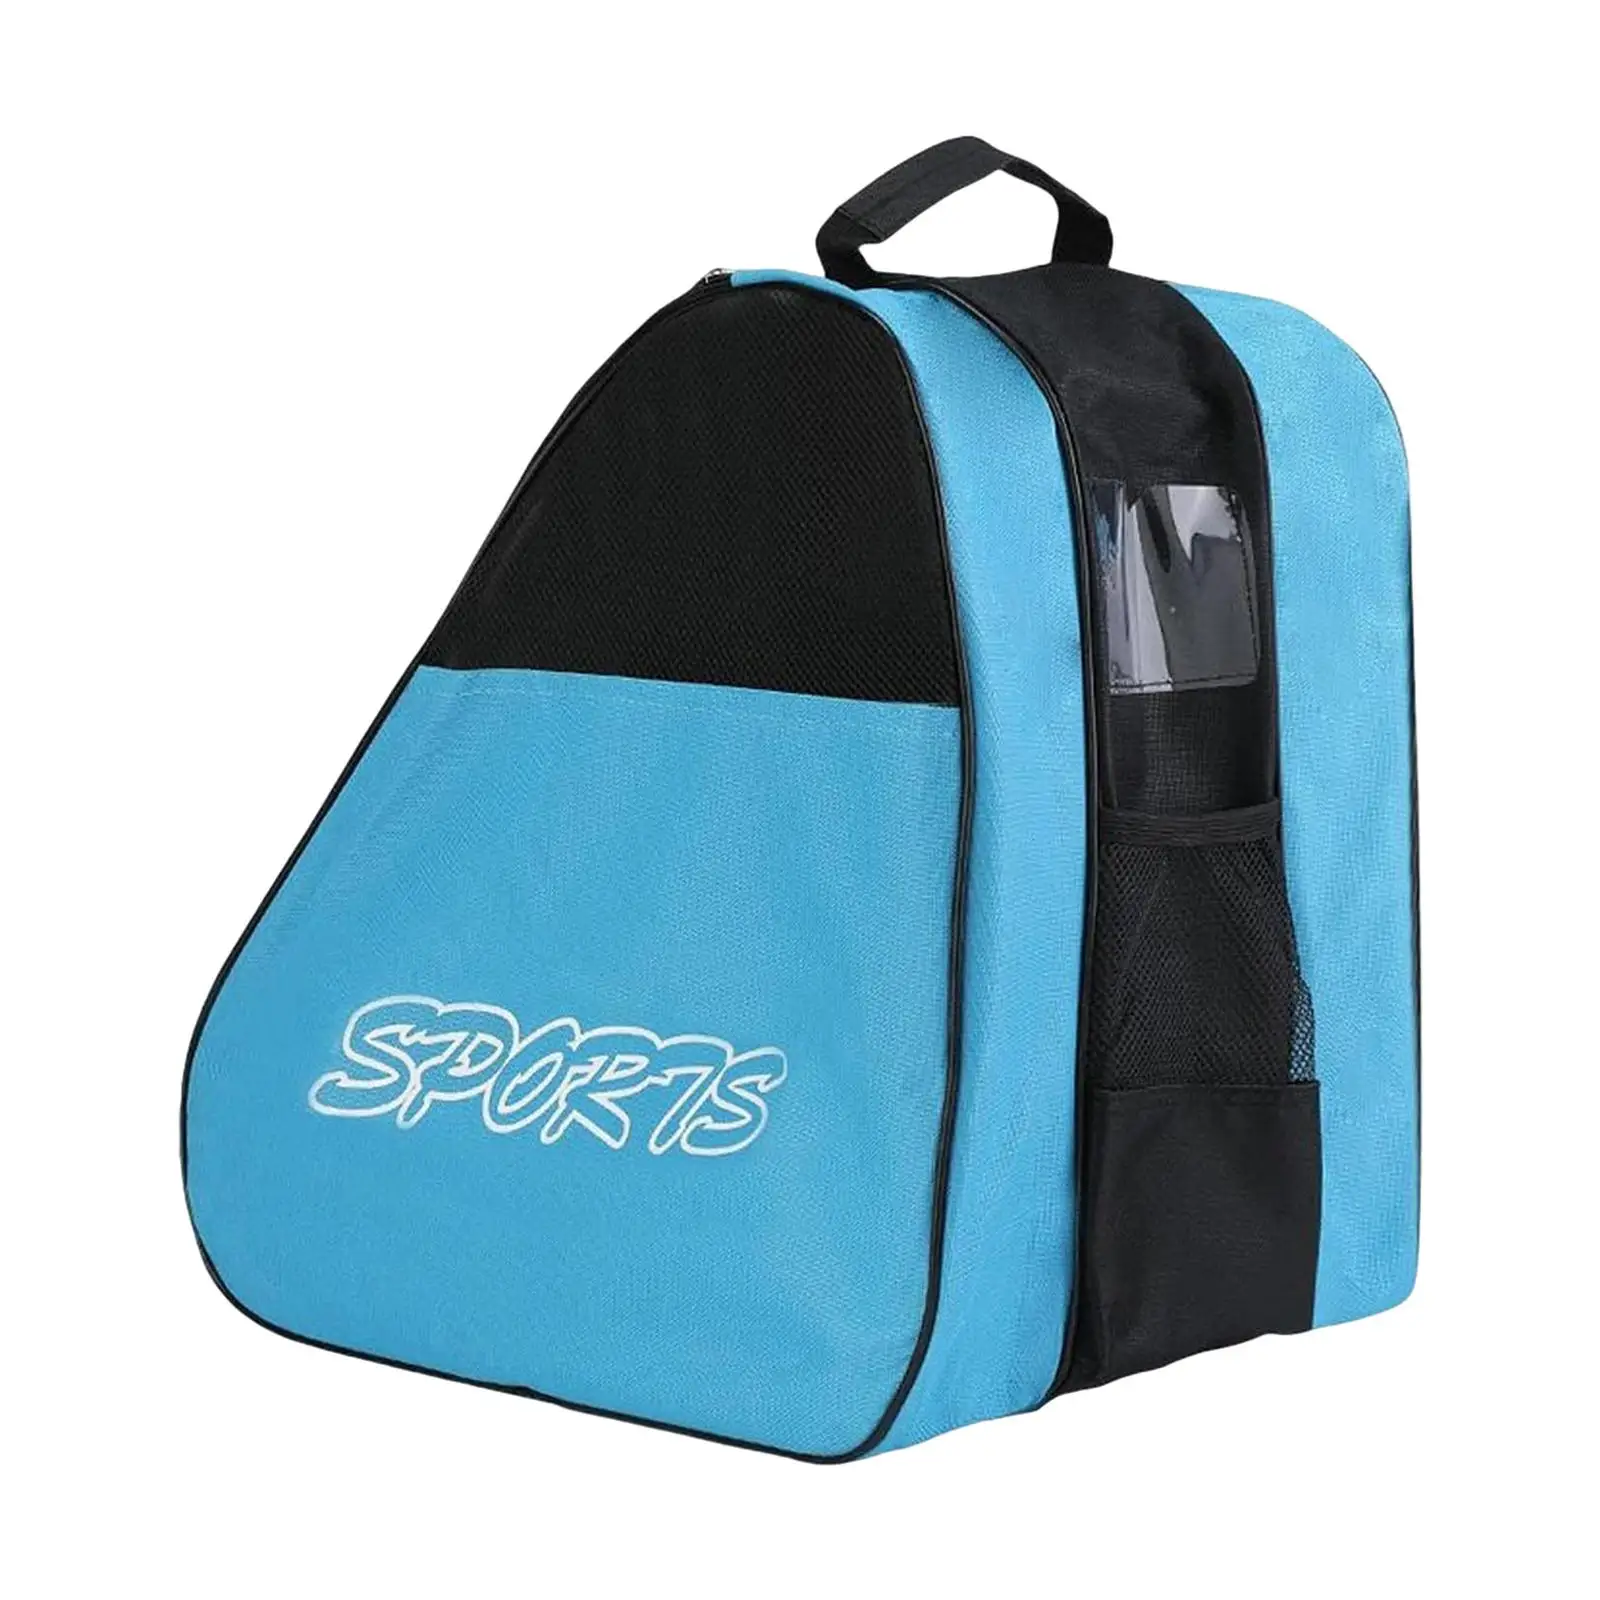 Roller Skate Bag Women Men Kids Inline Skates Bag with Shoulder Strap Durable